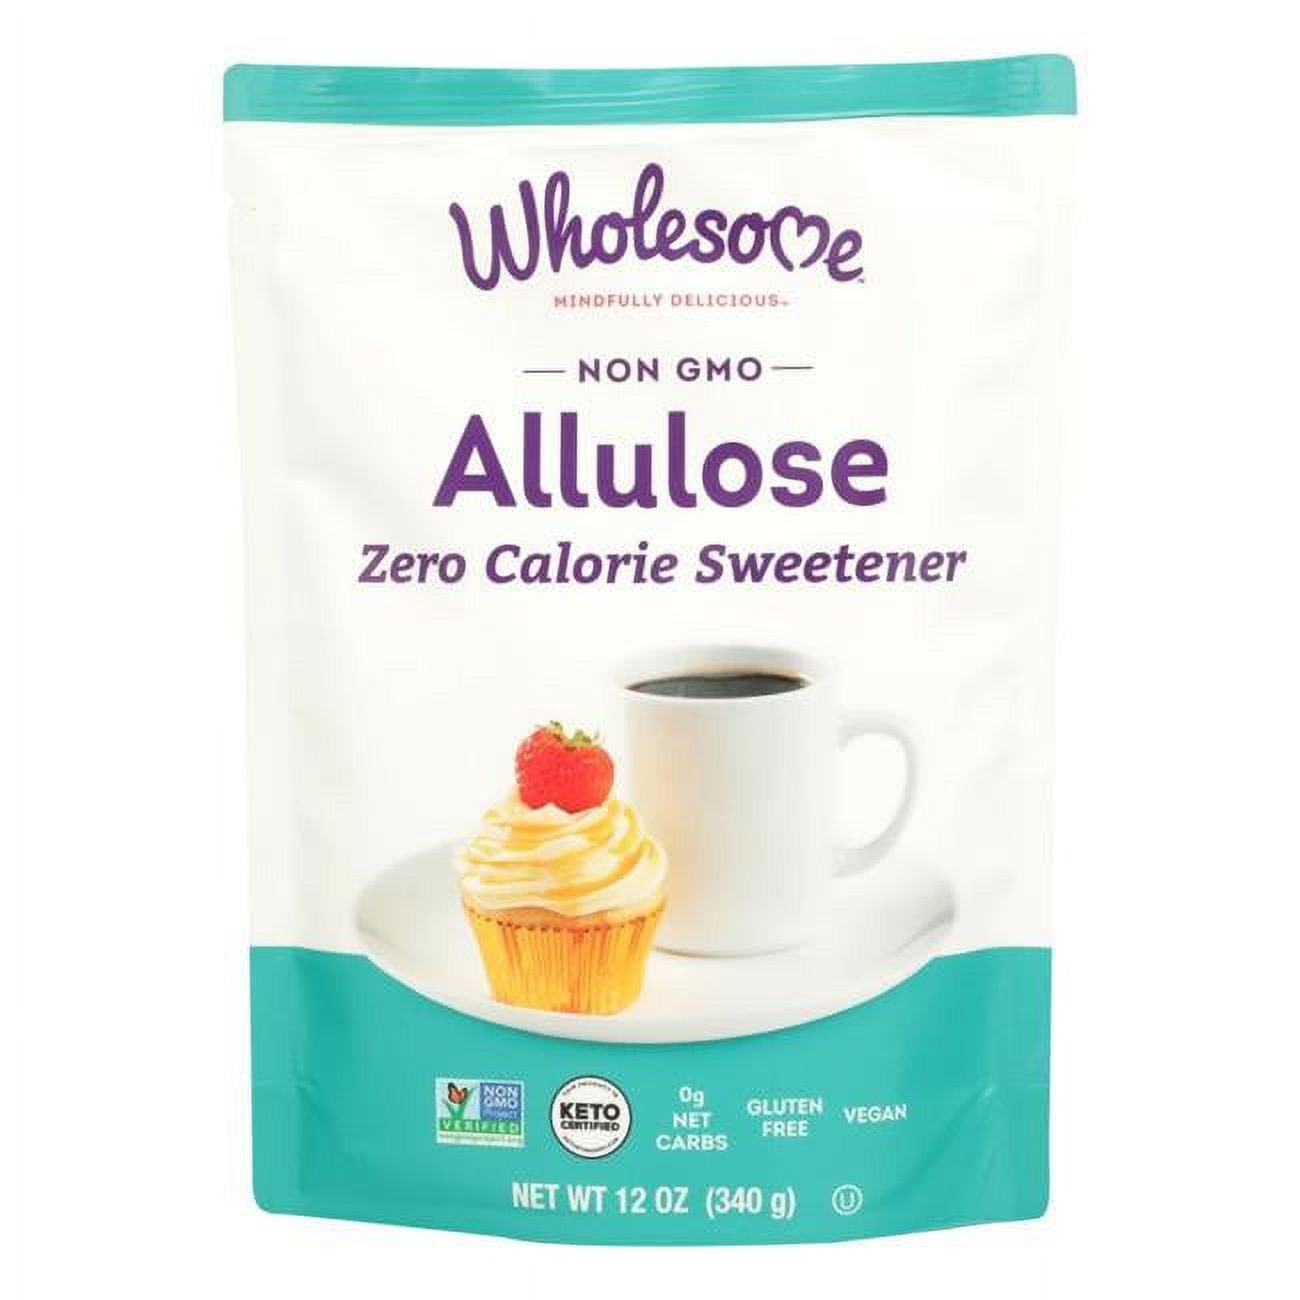 Wholesome Allulose Zero Calorie Sweetener 12 Oz Pouch